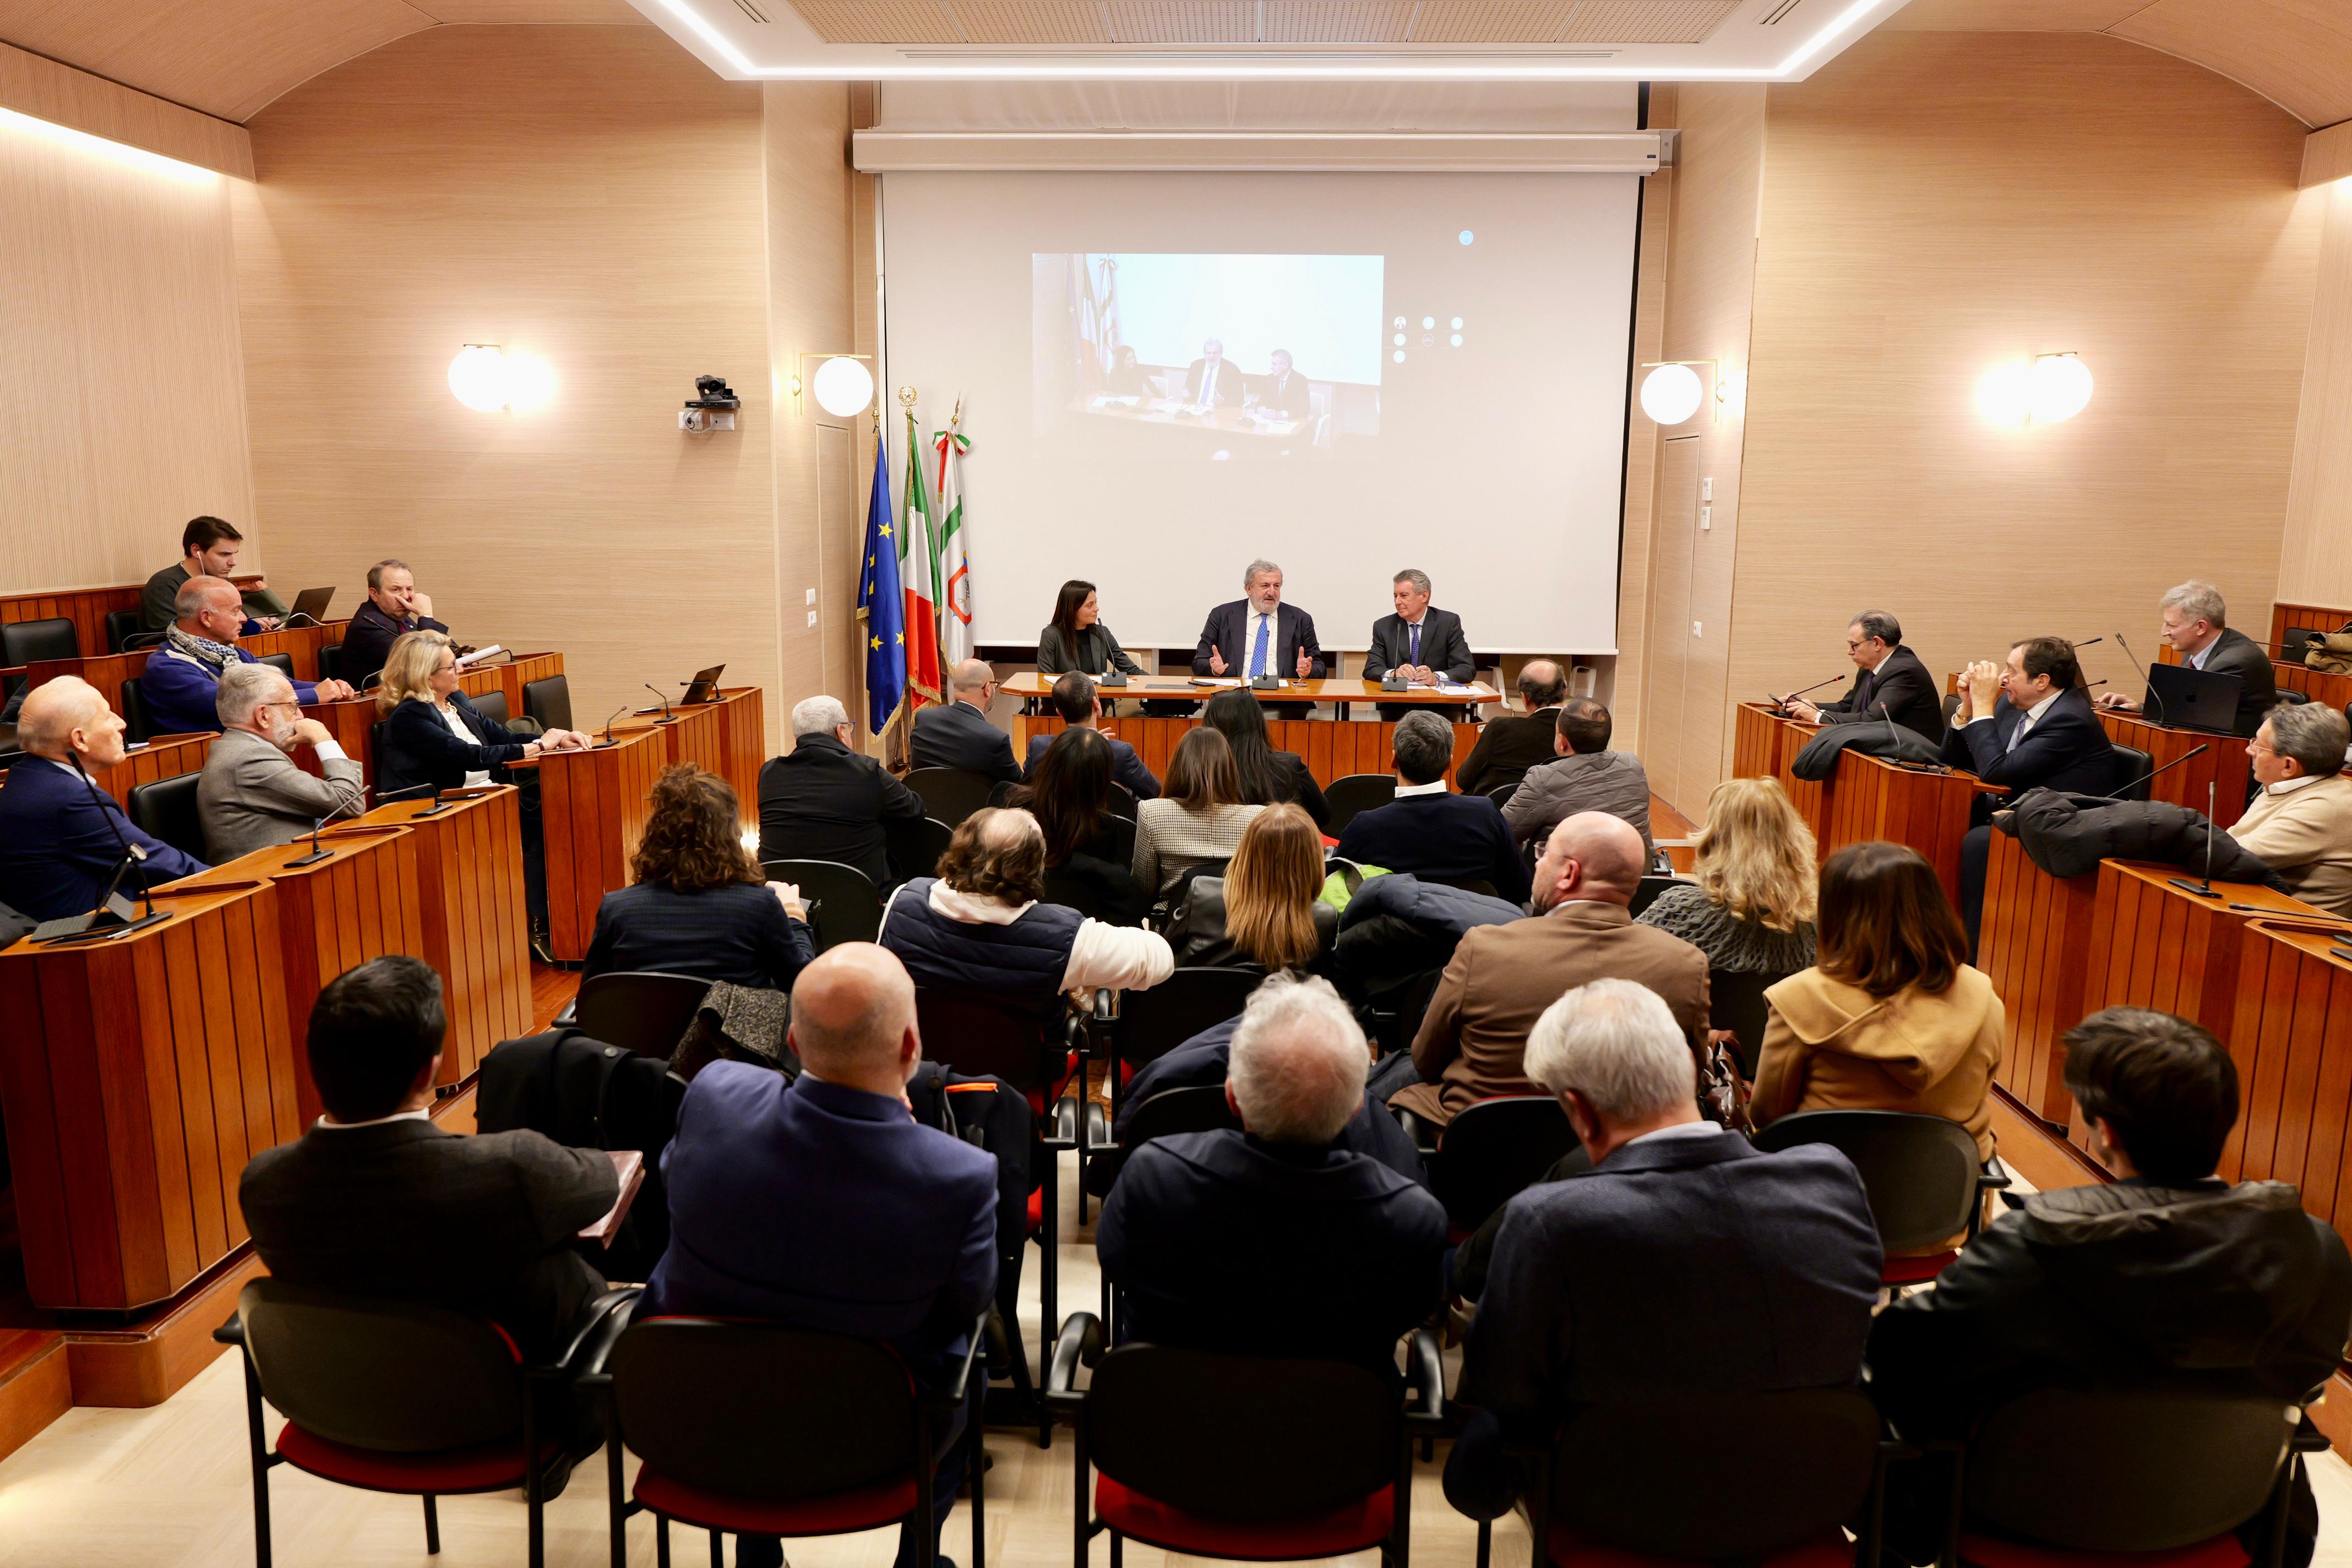 Galleria Premio Giorgio Ambrosoli e Regione Puglia per promuovere lo stato di diritto in funzione dello sviluppo economico e sociale - Diapositiva 2 di 8